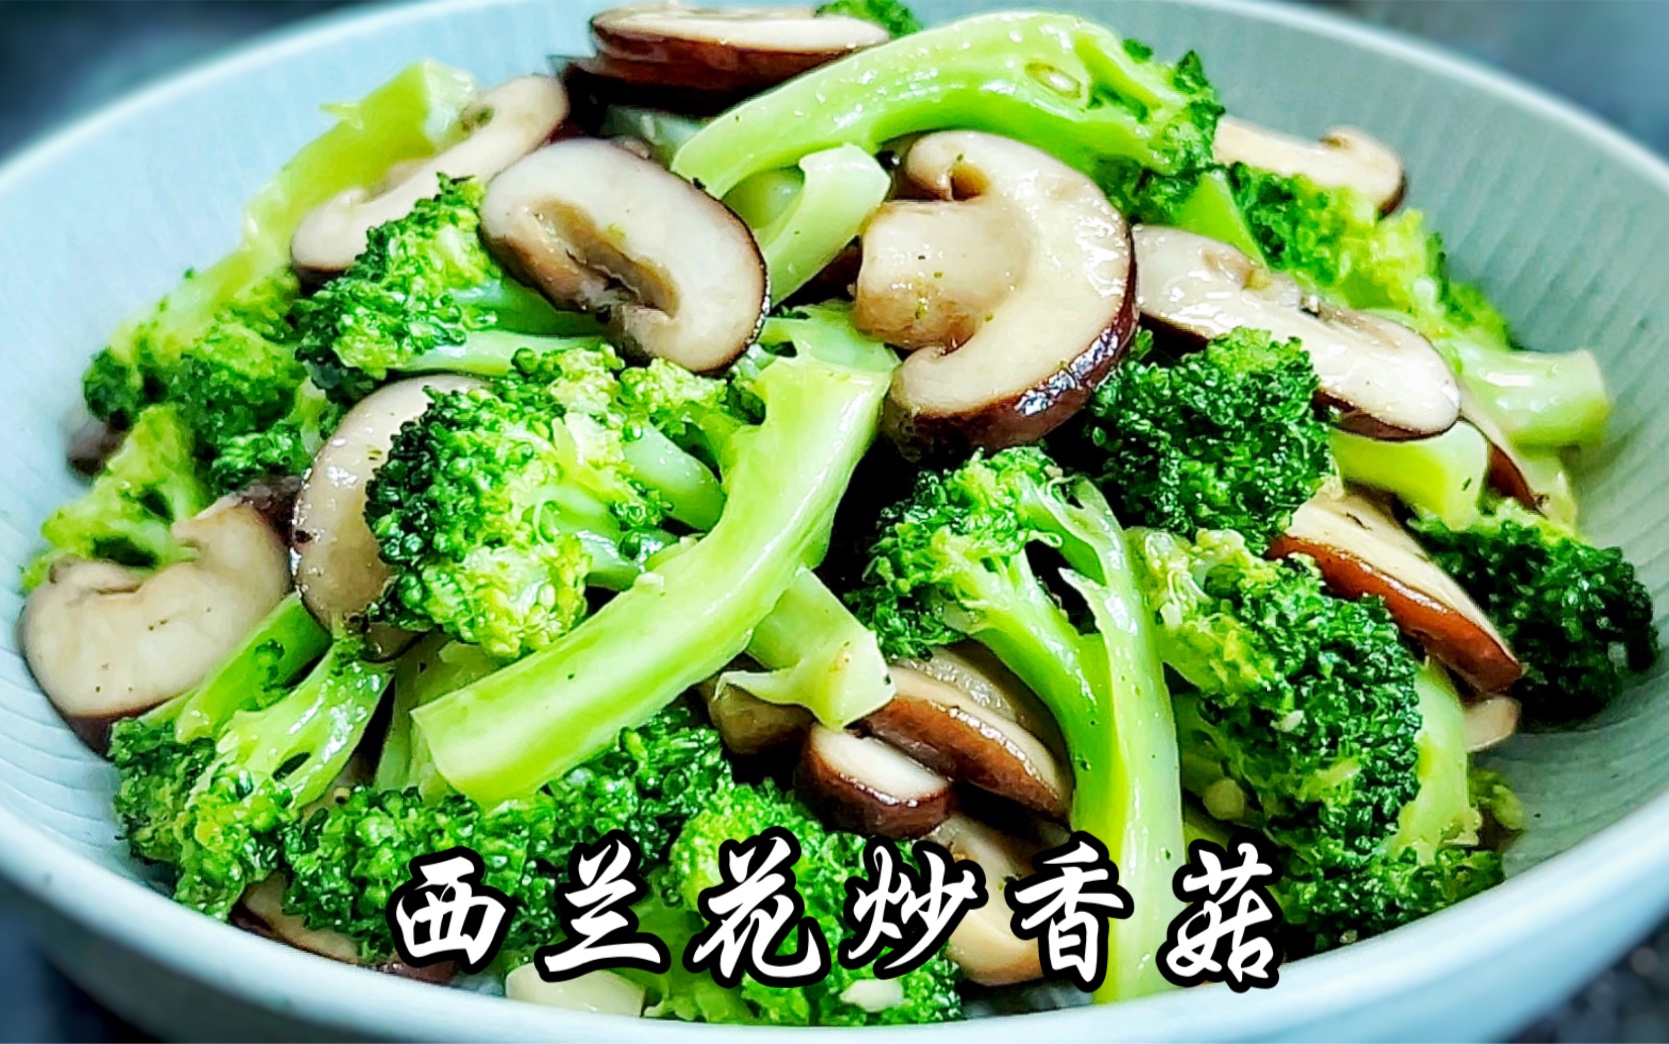 菊花菜炒香菇,菊花菜炒香菇的家常做法 - 美食杰菊花菜炒香菇做法大全